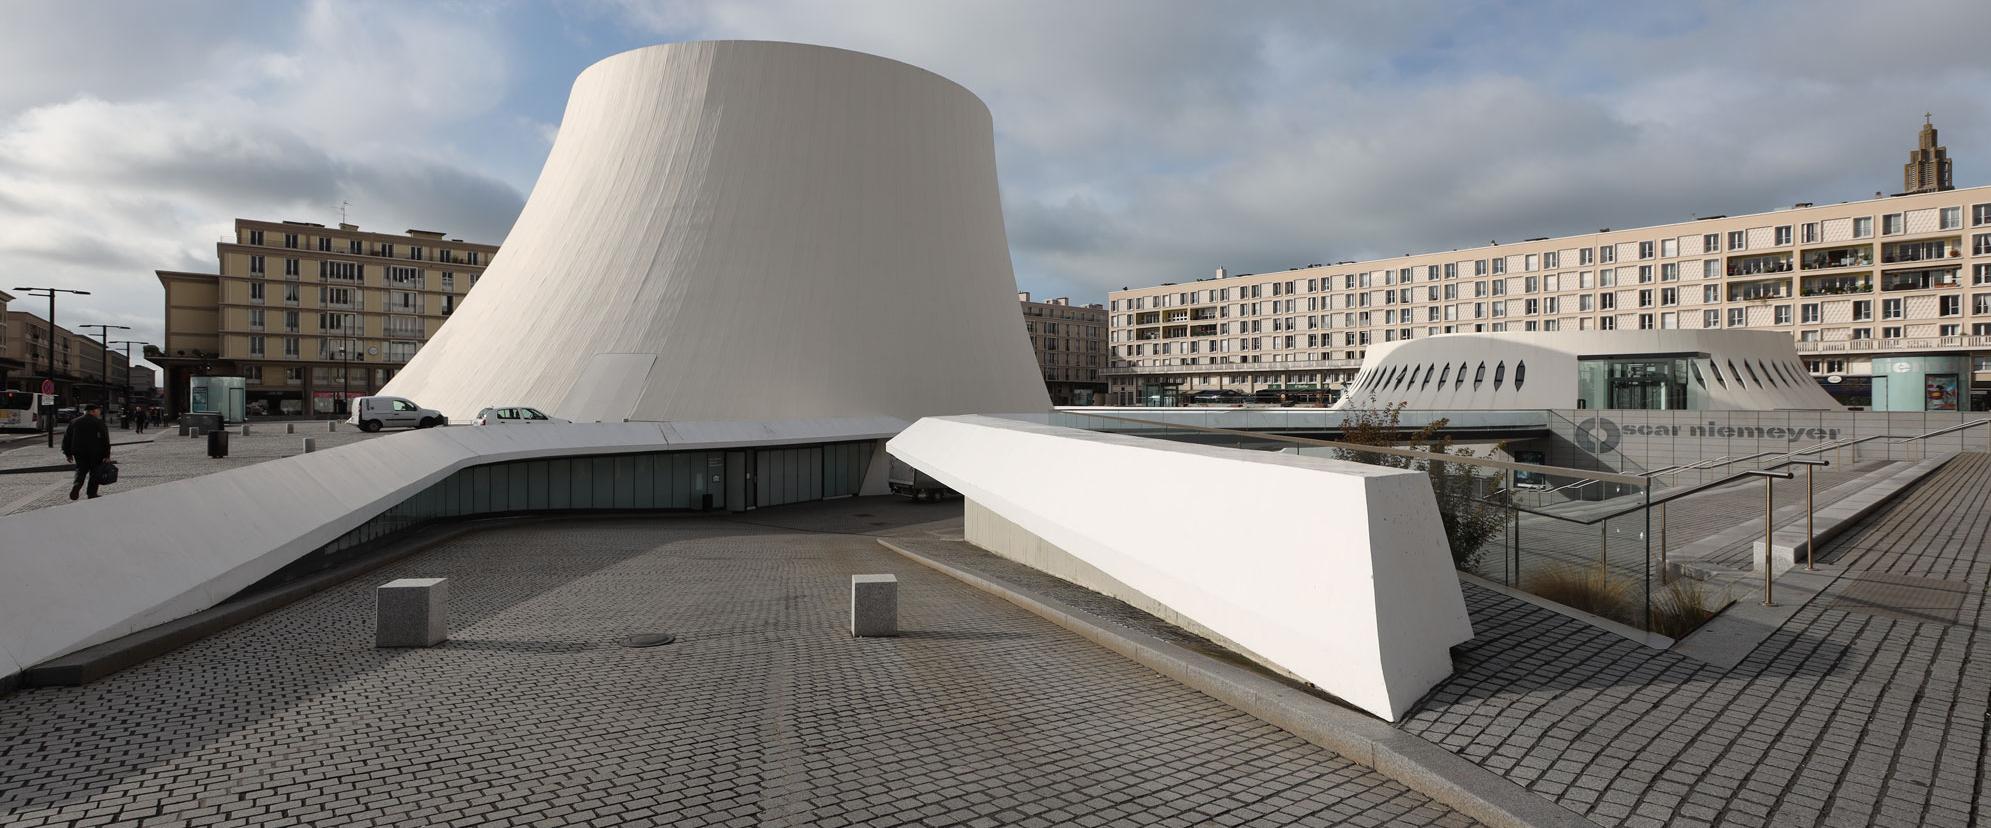 Espace Niemeyer, Le Havre